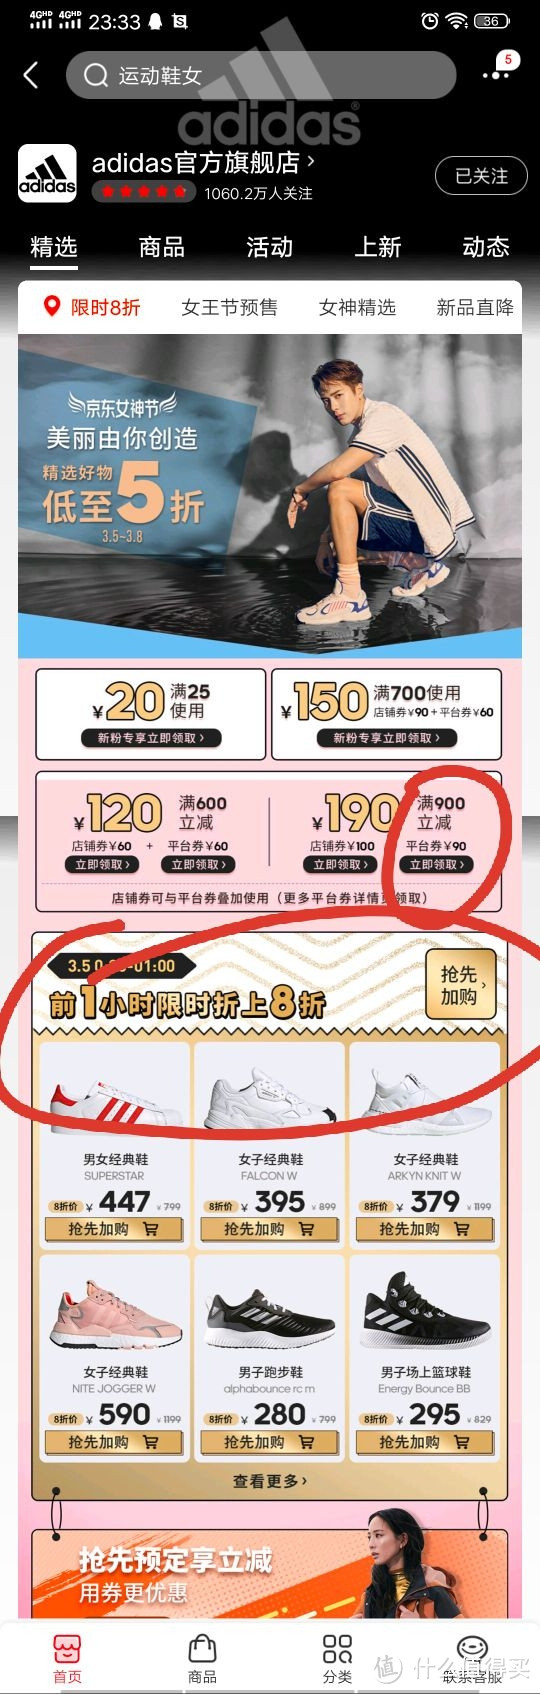 京东Adidas旗舰店3月5日00:00八折区400买1000